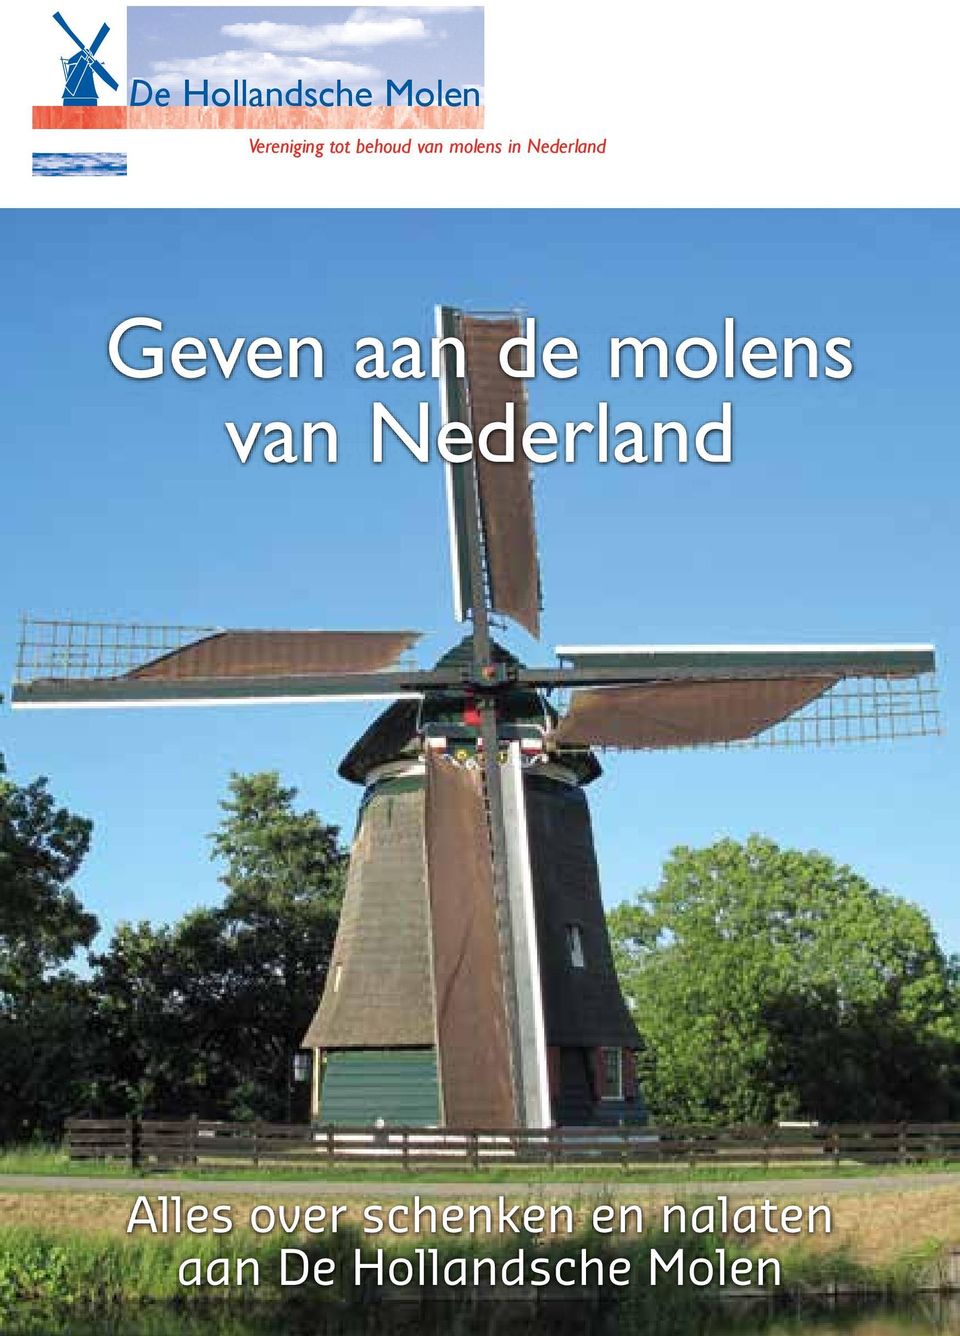 molens.nl 1095 AA Amsterdam dhm@molens.